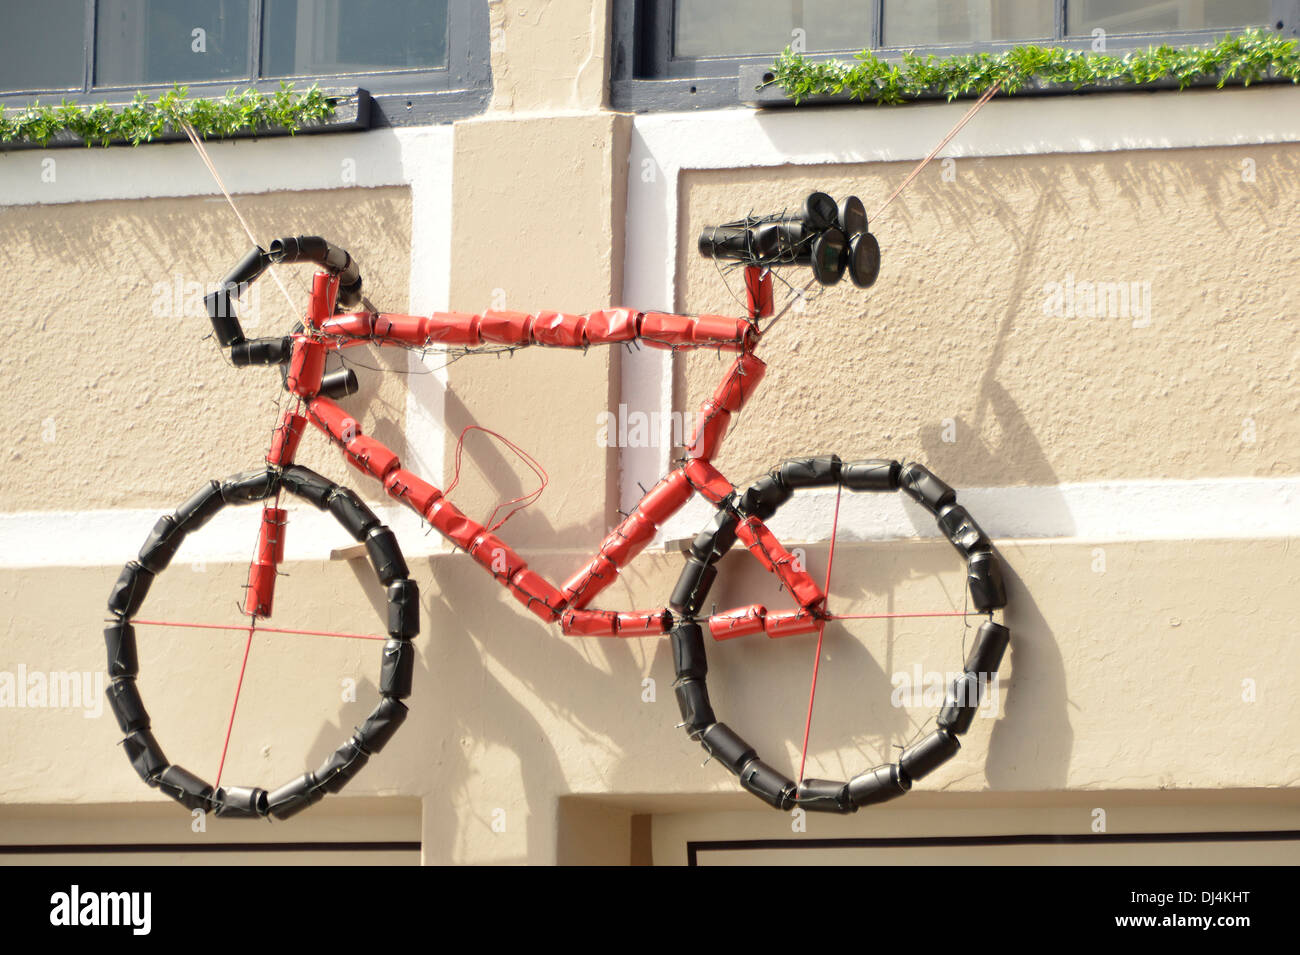 Incroyable mini vélo motorisé fabriqué avec des canettes de soda et des  matériaux recyclables 